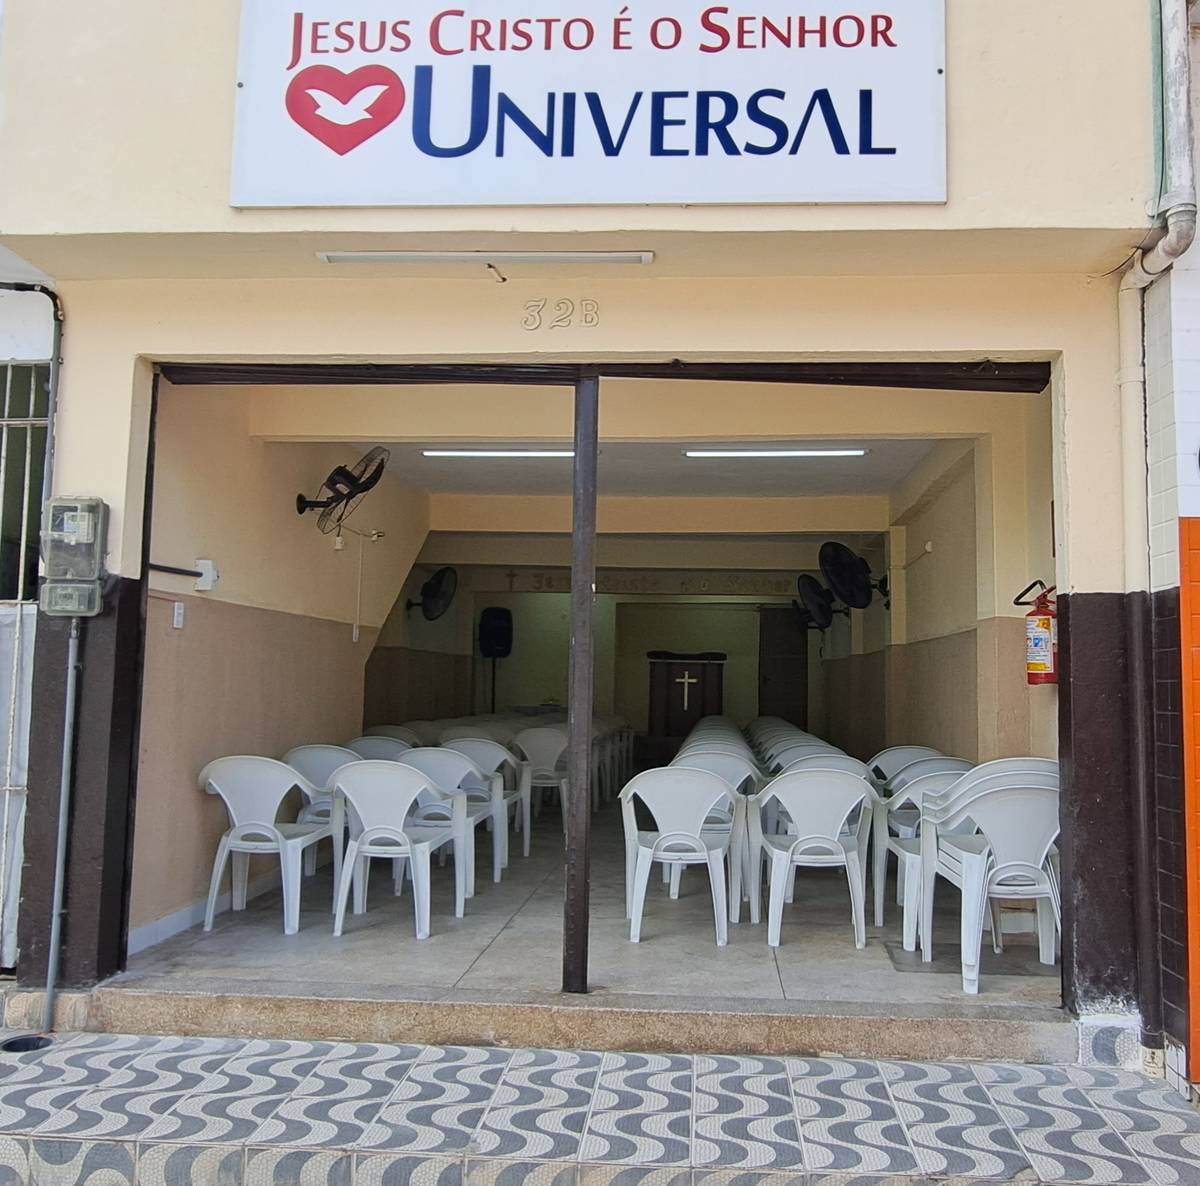 Igreja Universal GUABIRABA - Córrego José Idalino, 32 - Brejo da Guabiraba, Recife - Pernambuco  - 52291070 - Brasil